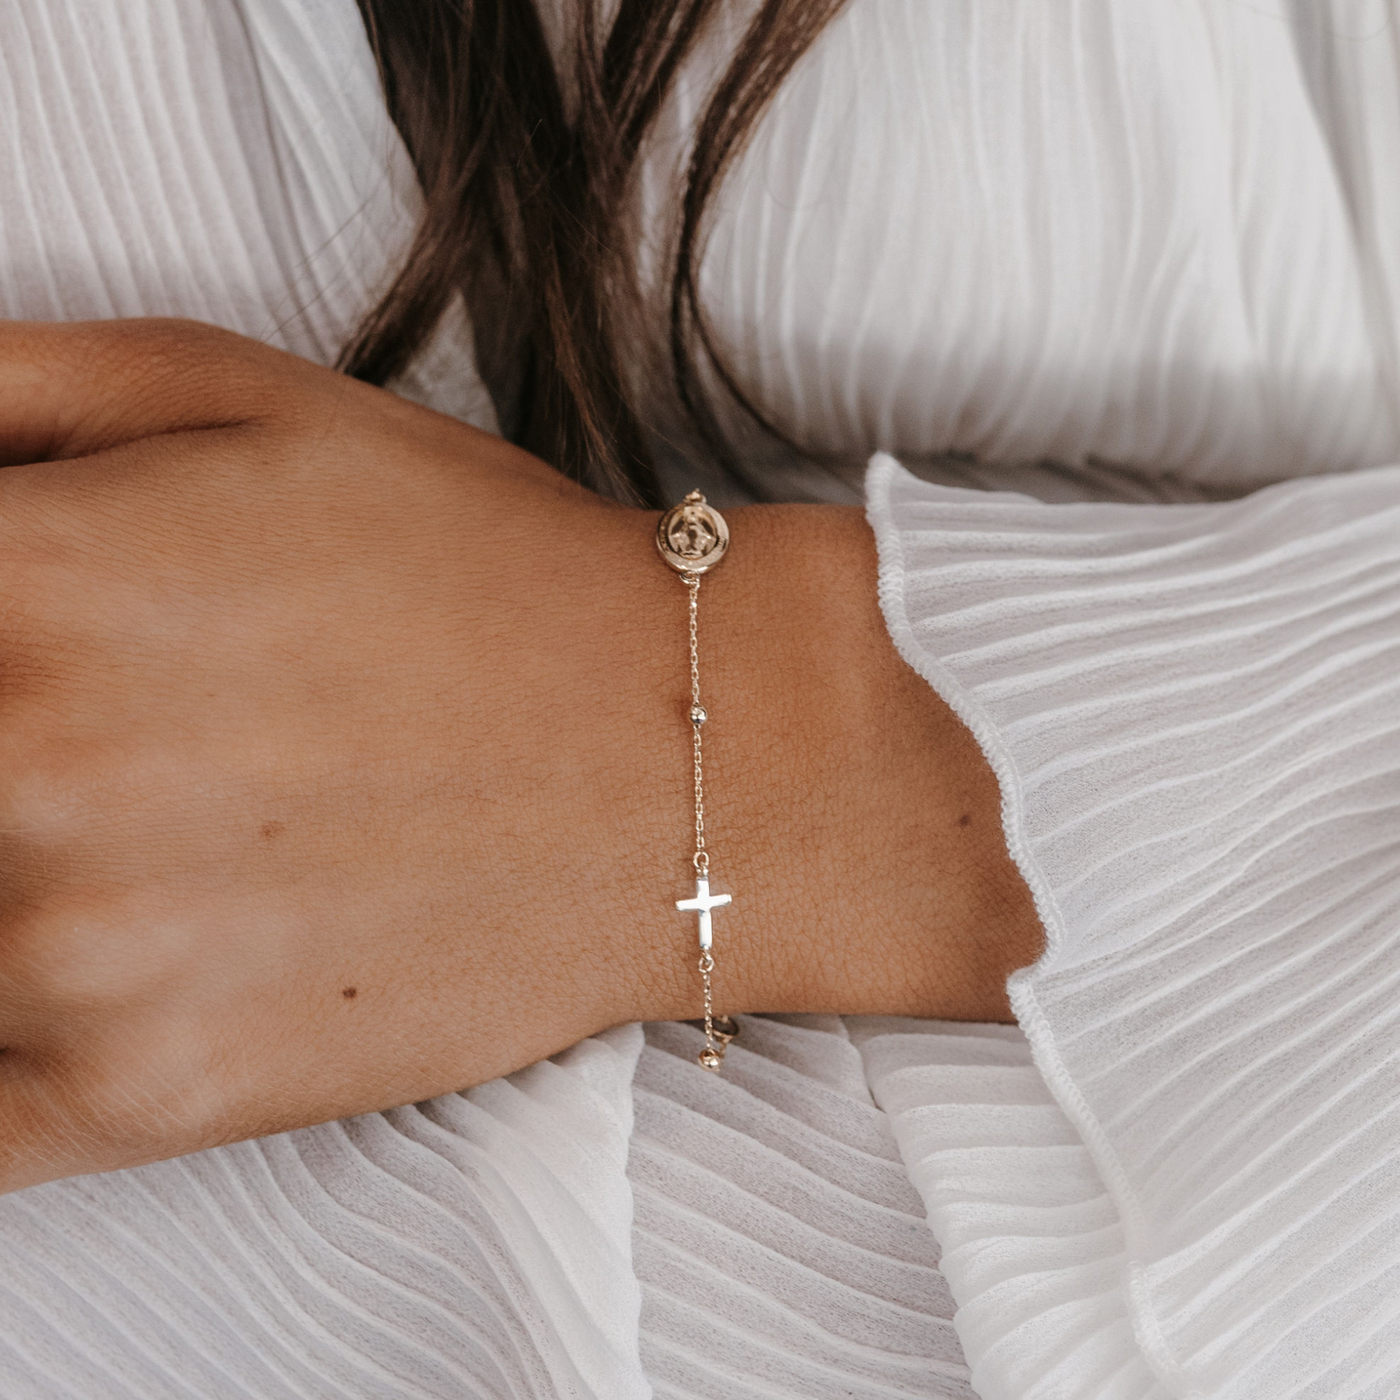 Virgin Mary & Cross Bracelet